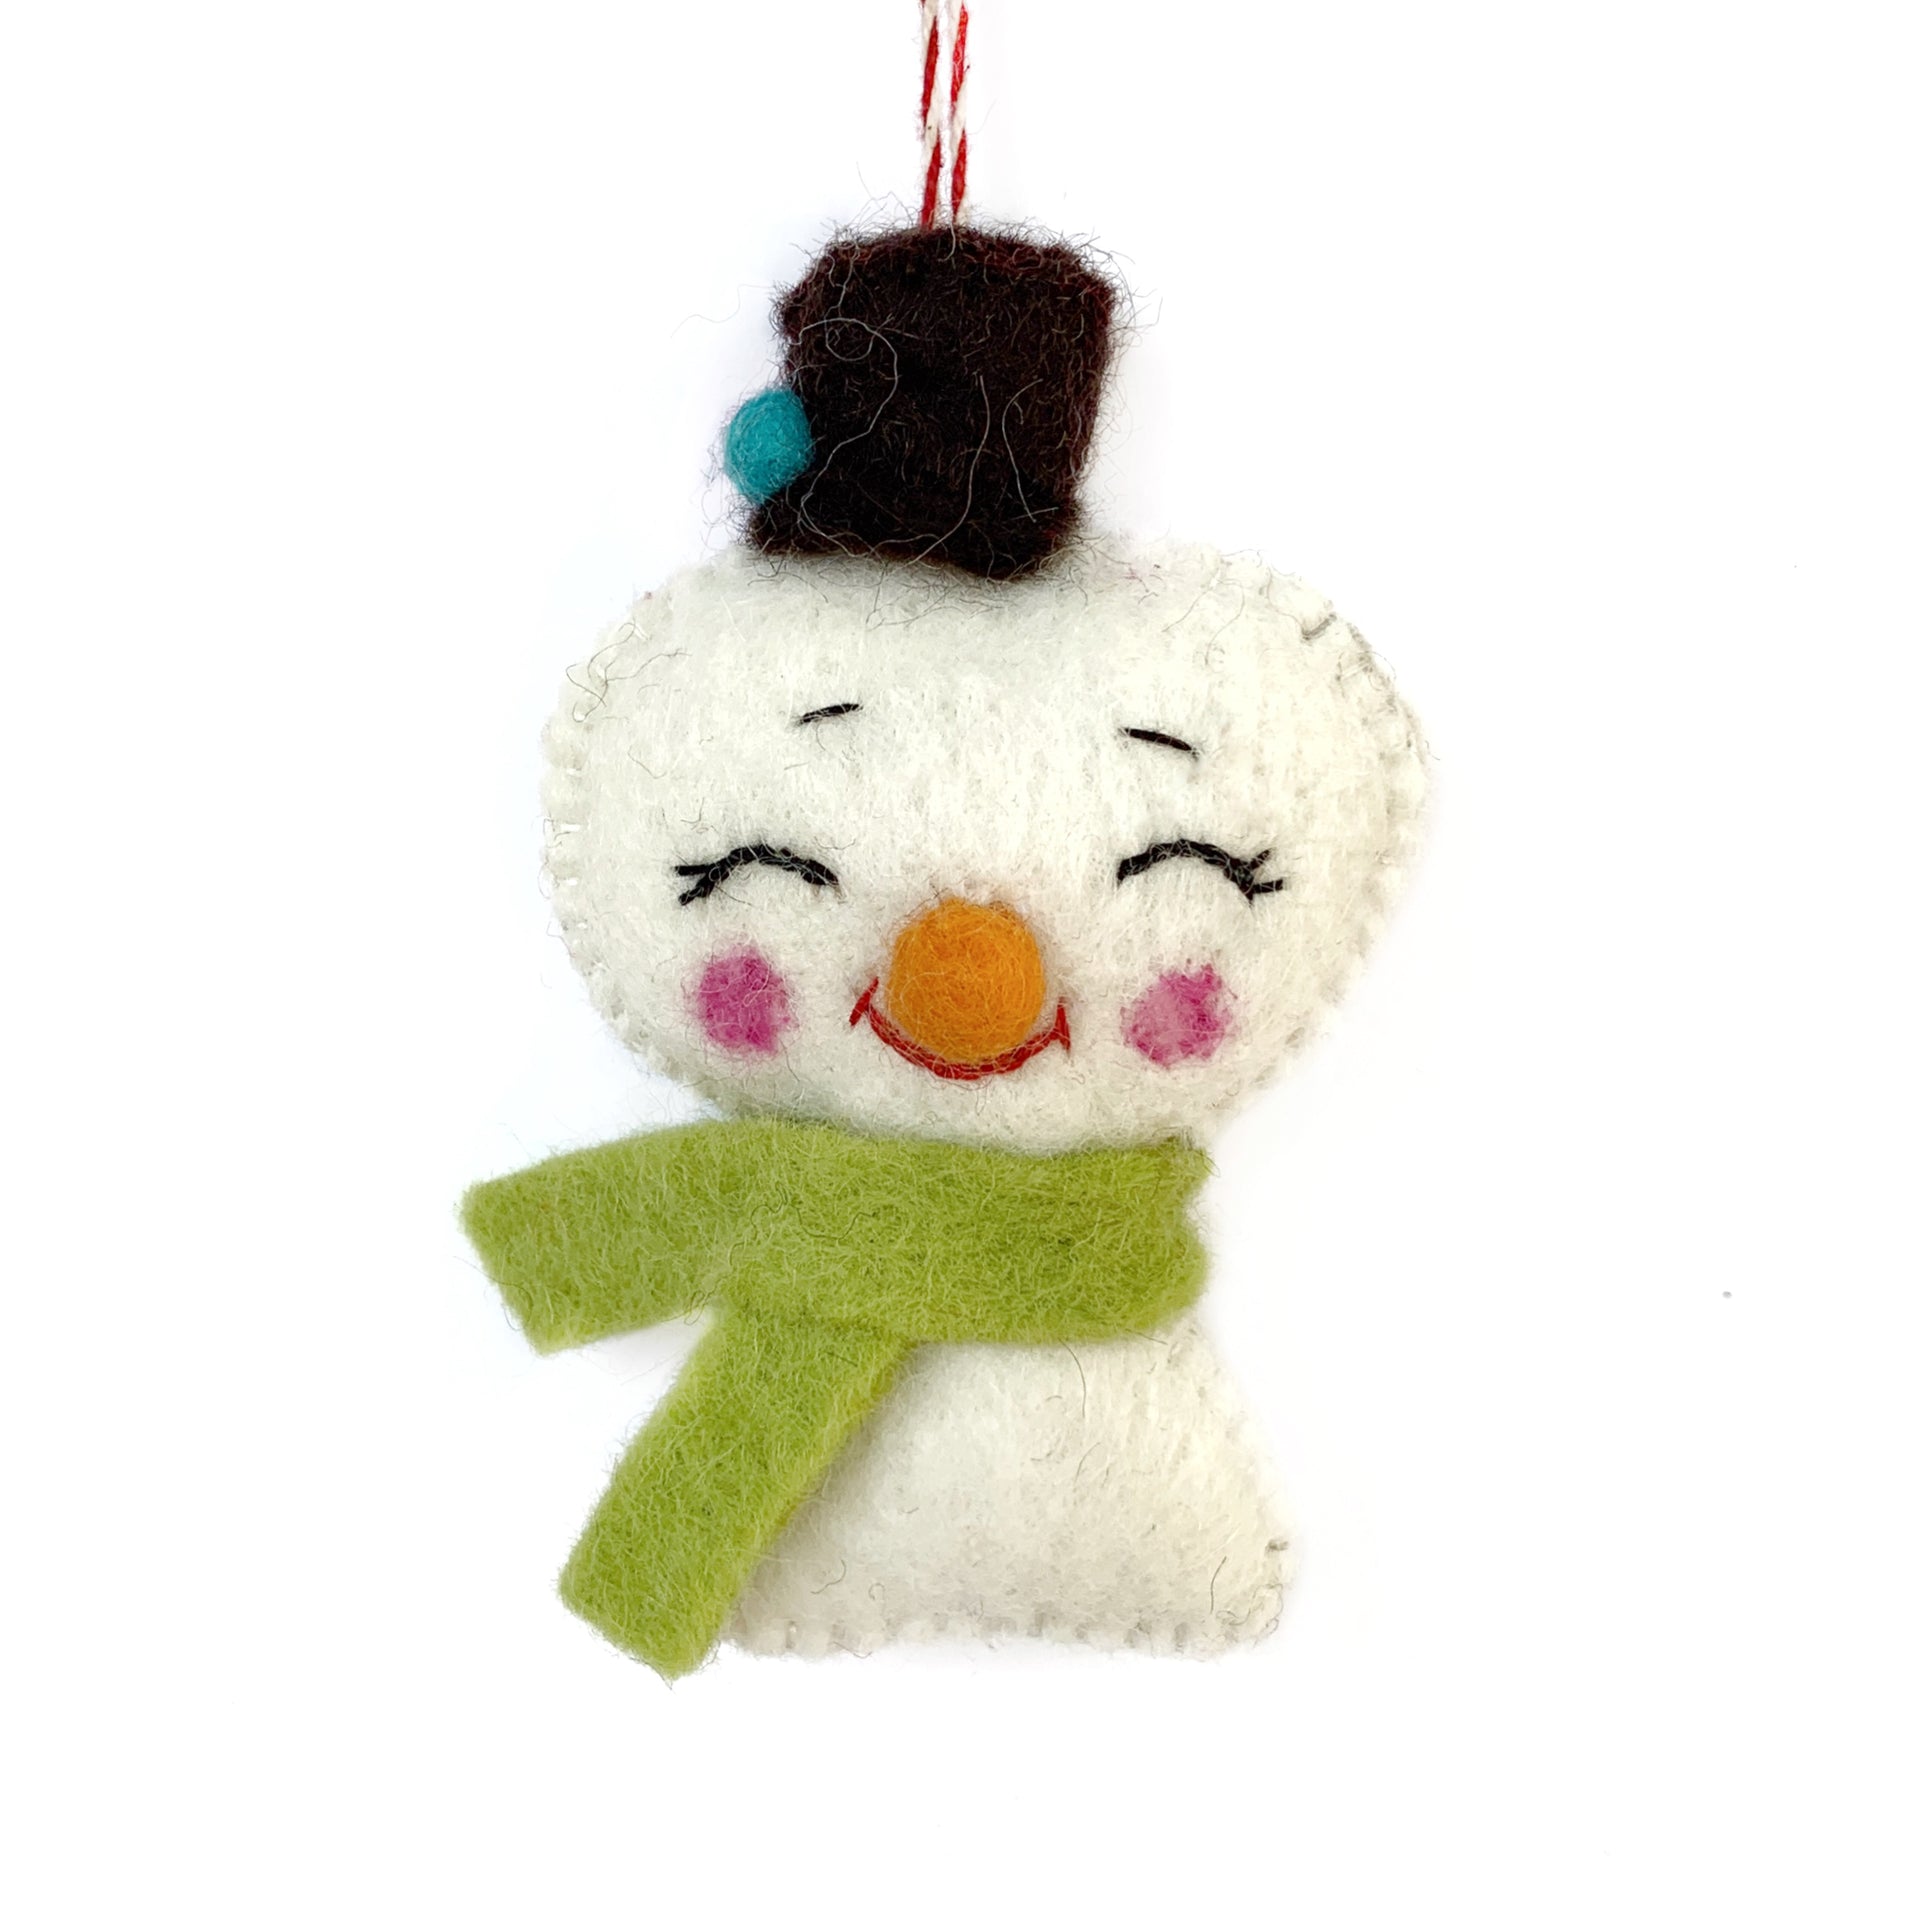 Felted Wool Cheerful Snowman Ornament Fair Trade